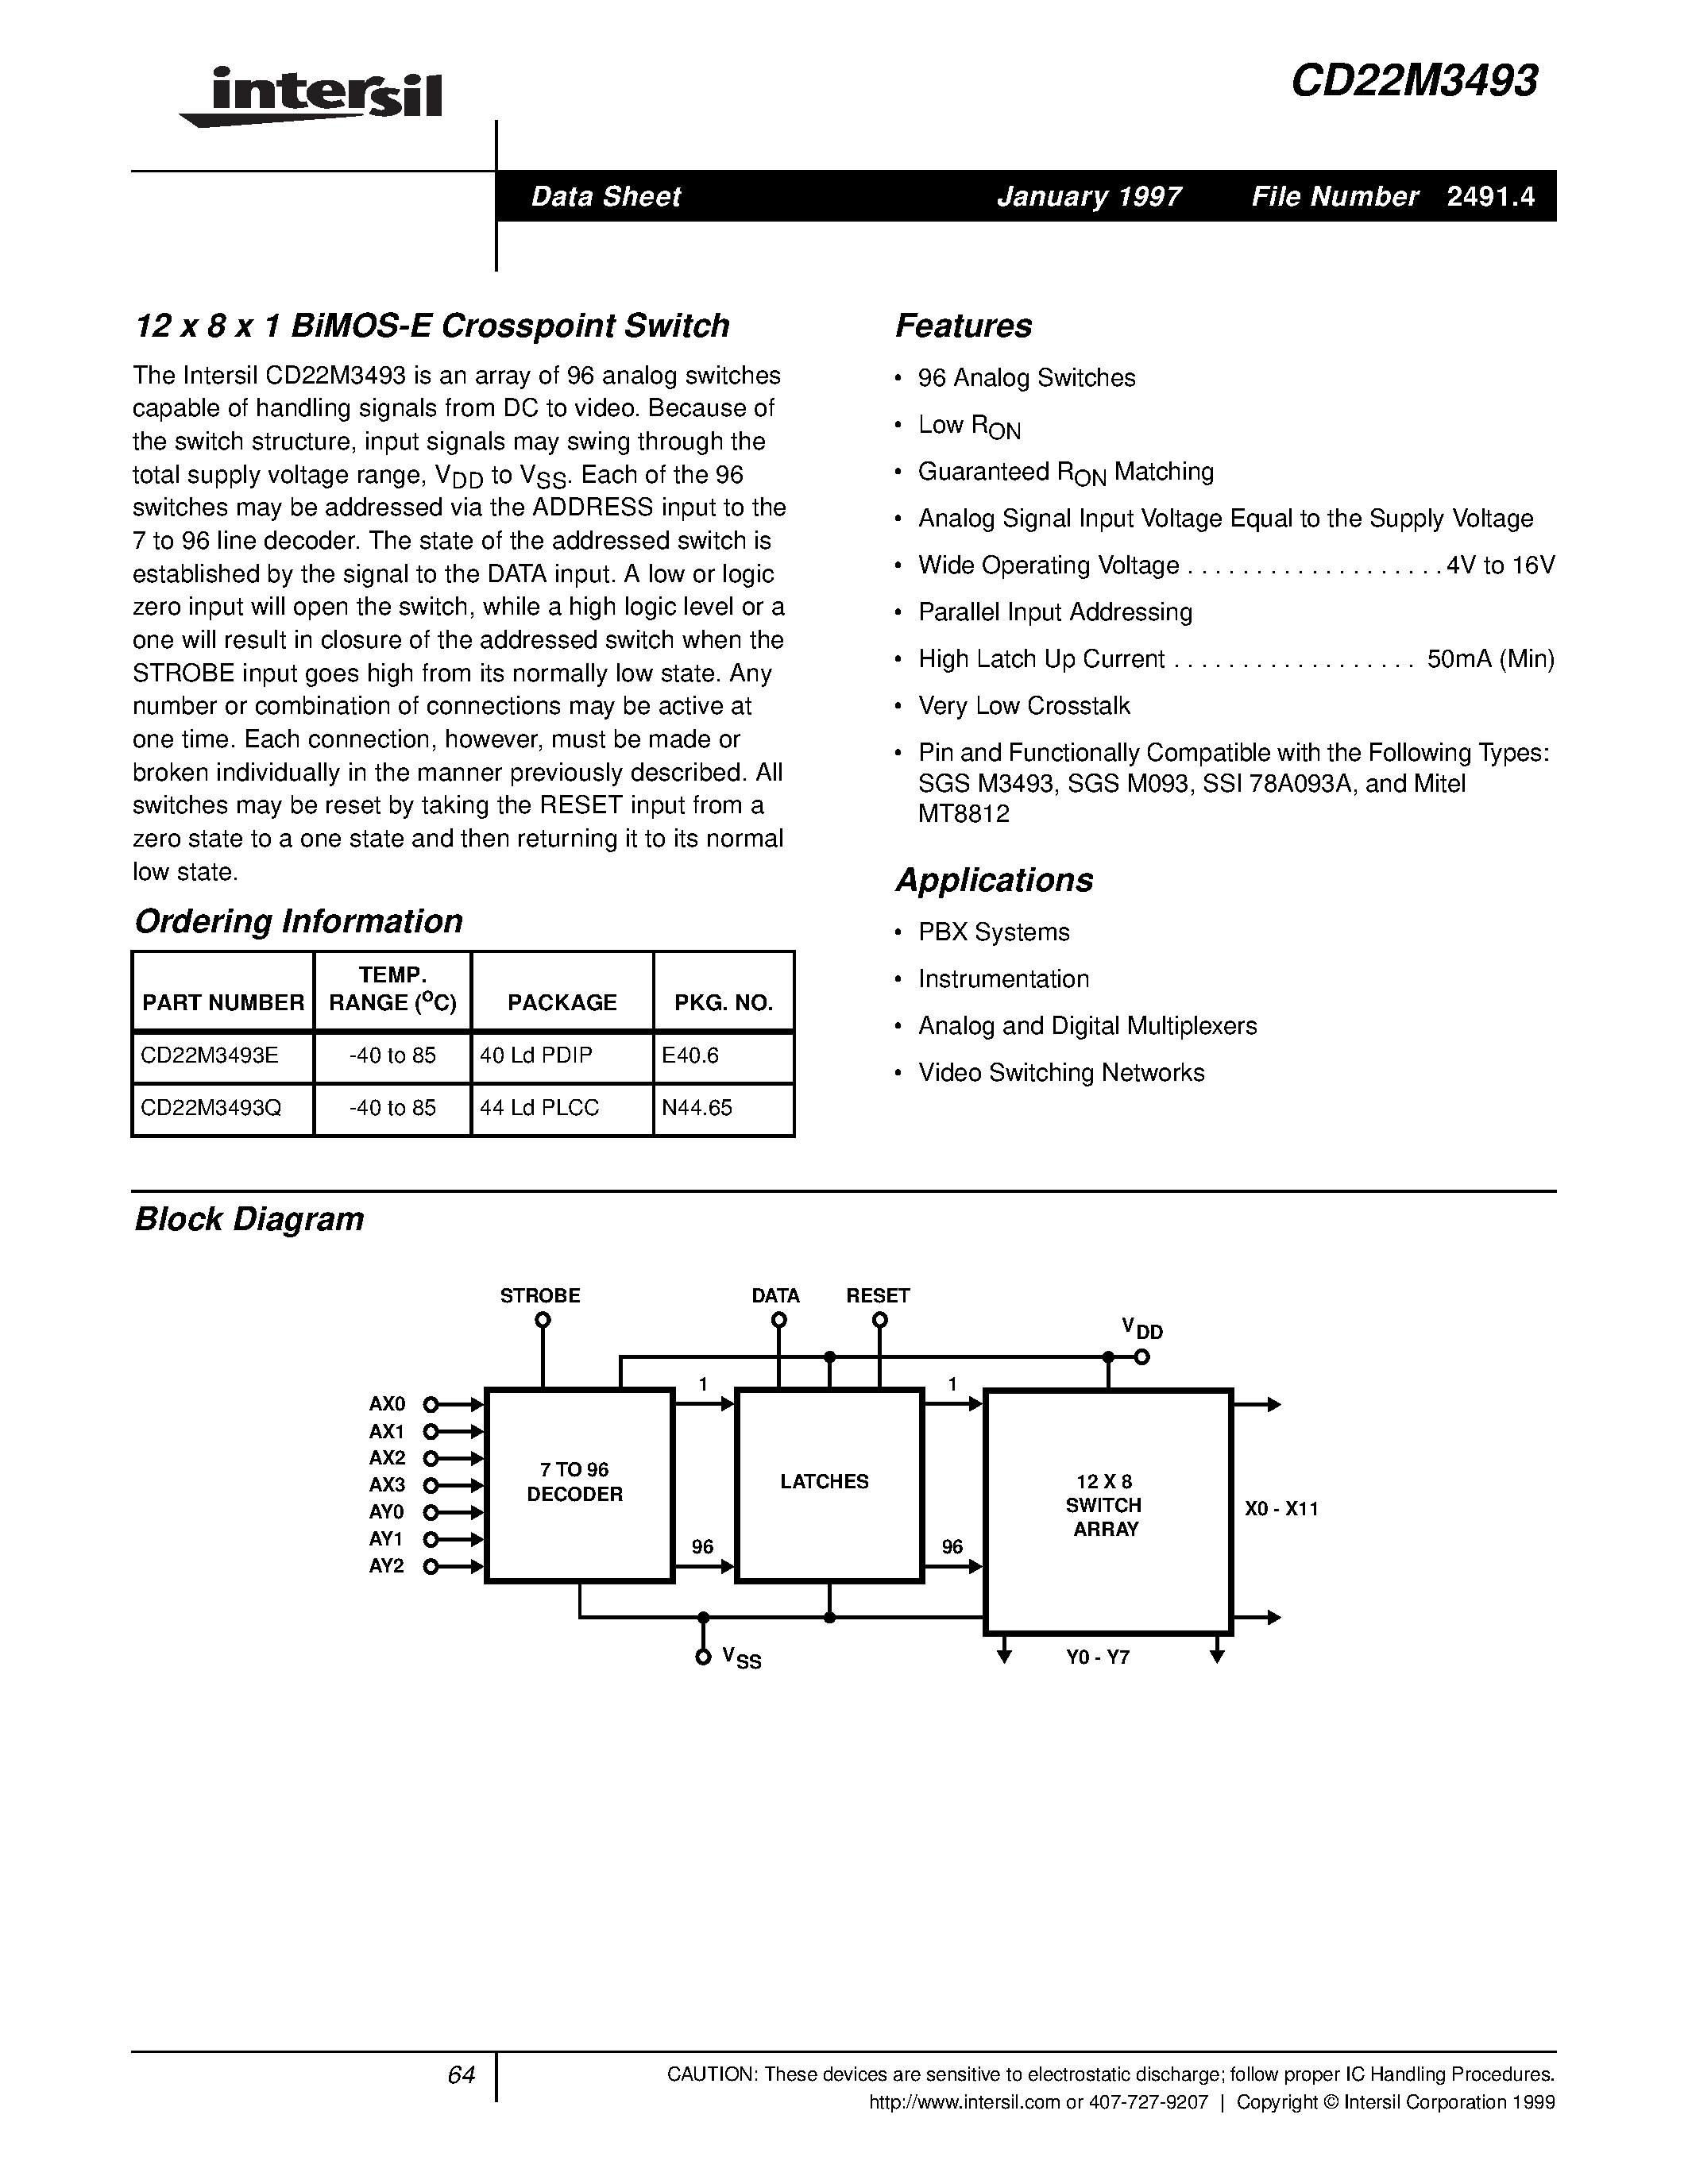 Даташит CD22M3493 - 12 x 8 x 1 BiMOS-E Crosspoint Switch страница 1